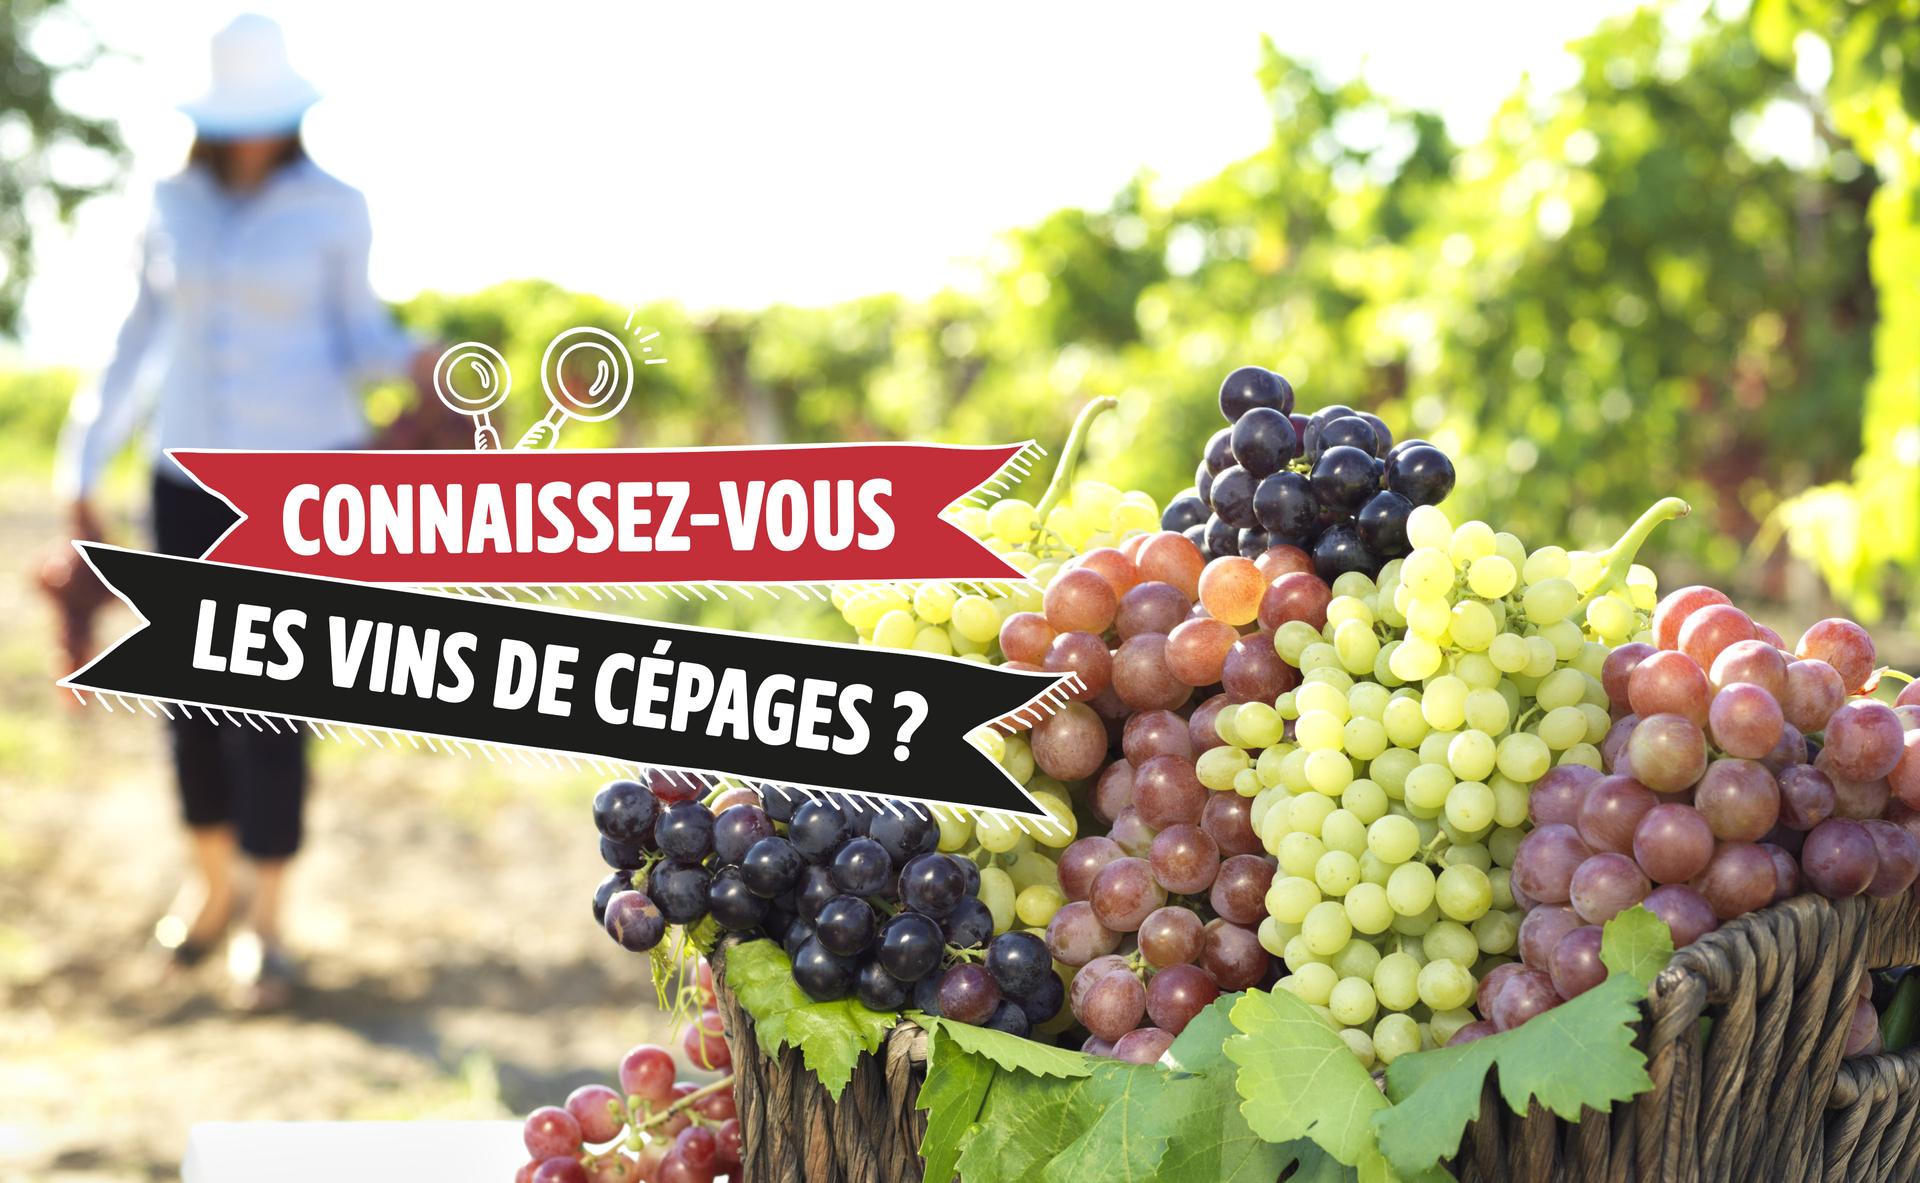 Connaissez-vous les vins de cépages ?